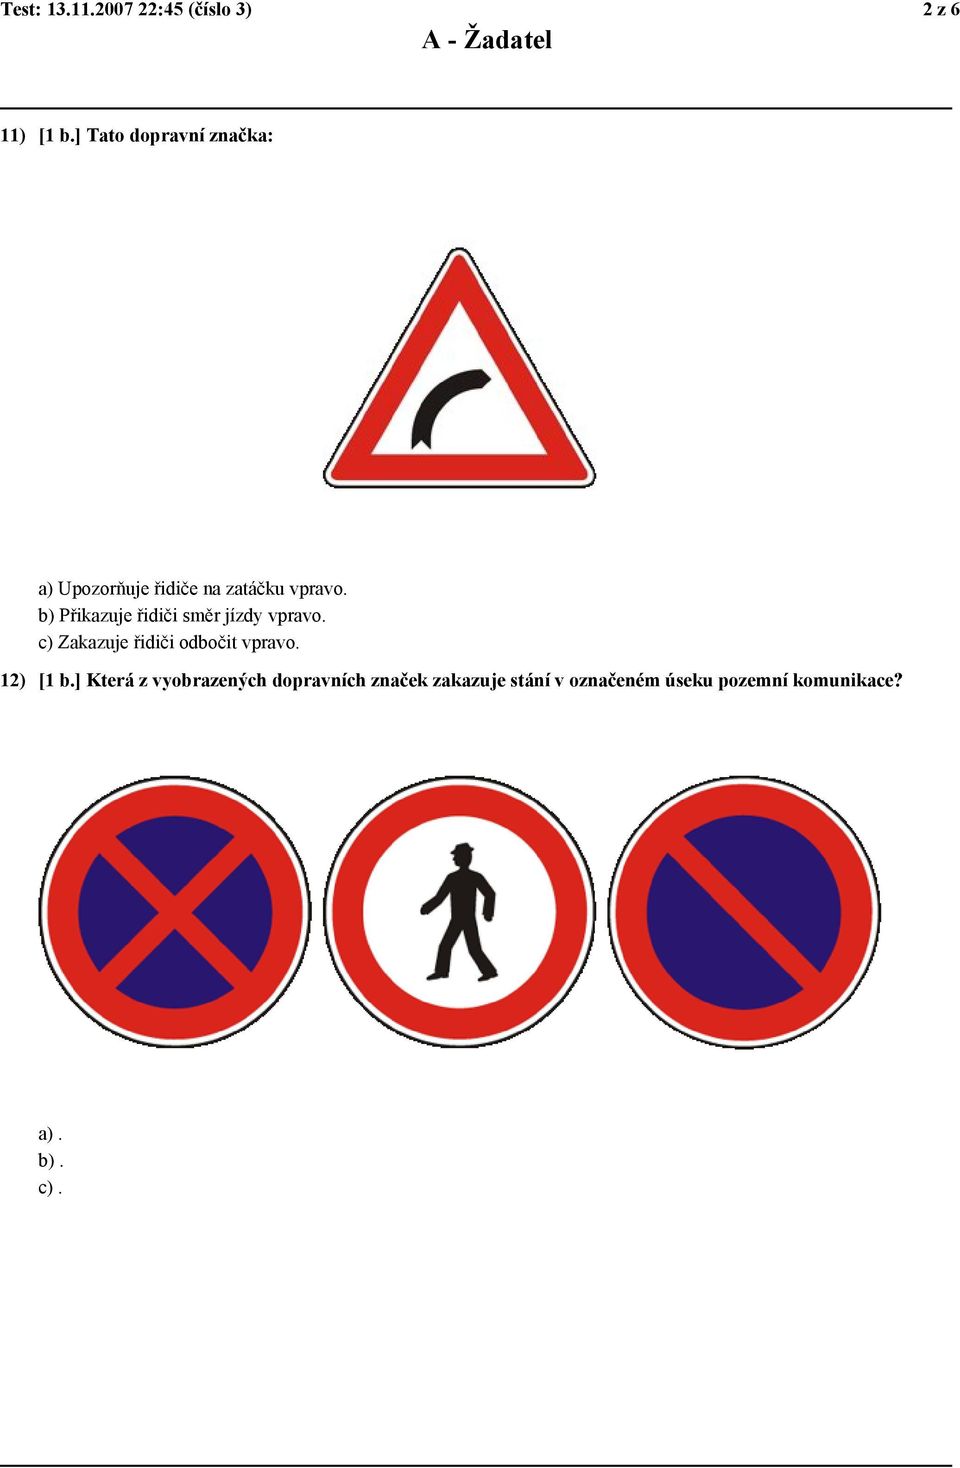 b) Přikazuje řidiči směr jízdy vpravo. c) Zakazuje řidiči odbočit vpravo.